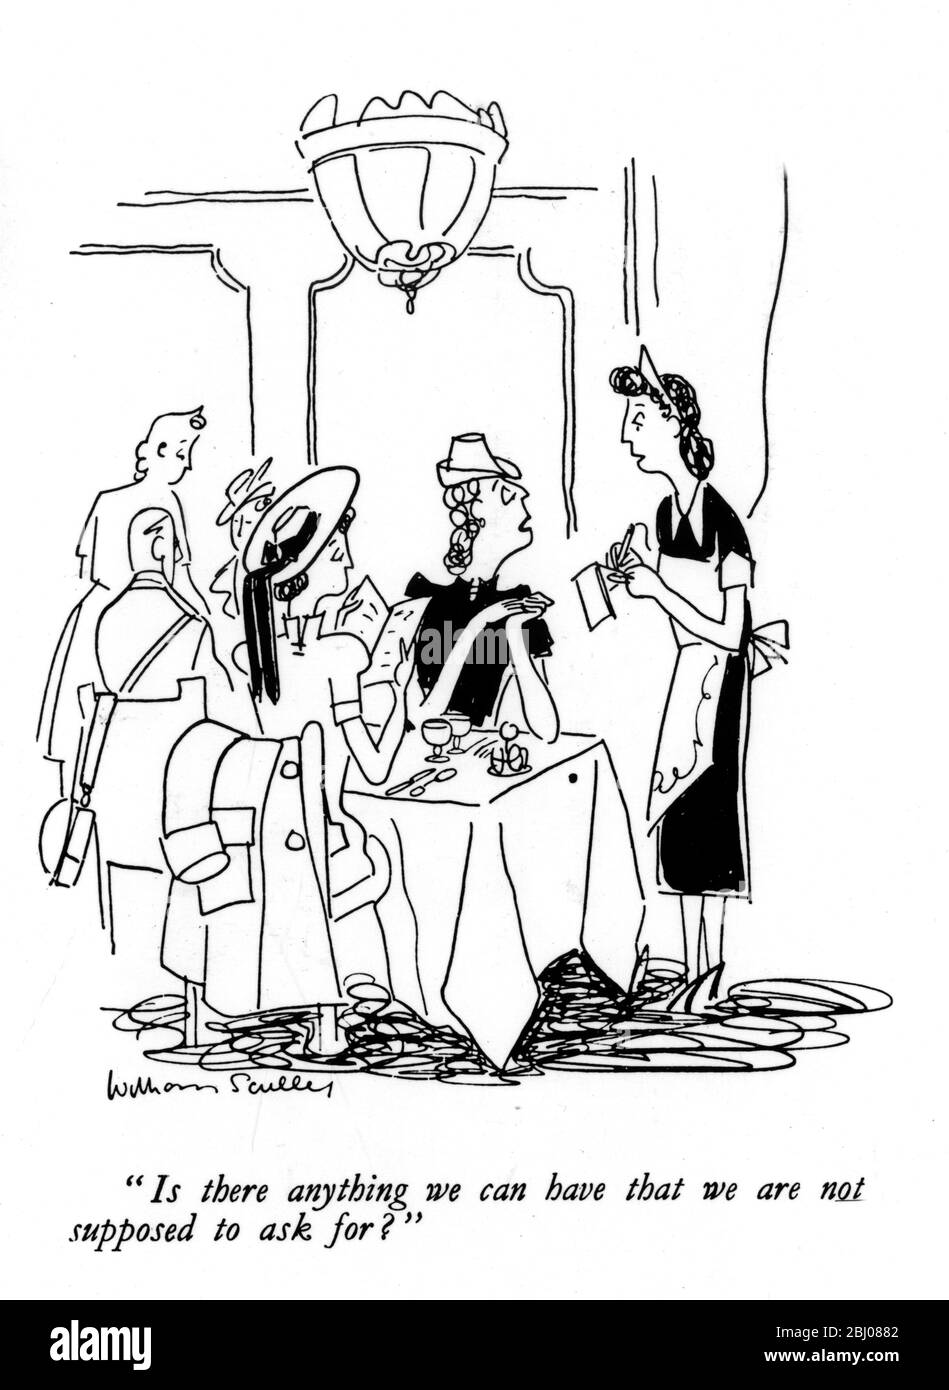 Karikatur zum Zweiten Weltkrieg. Gibt es etwas, was wir haben können, um das wir nicht bitten sollen? - Stockfoto